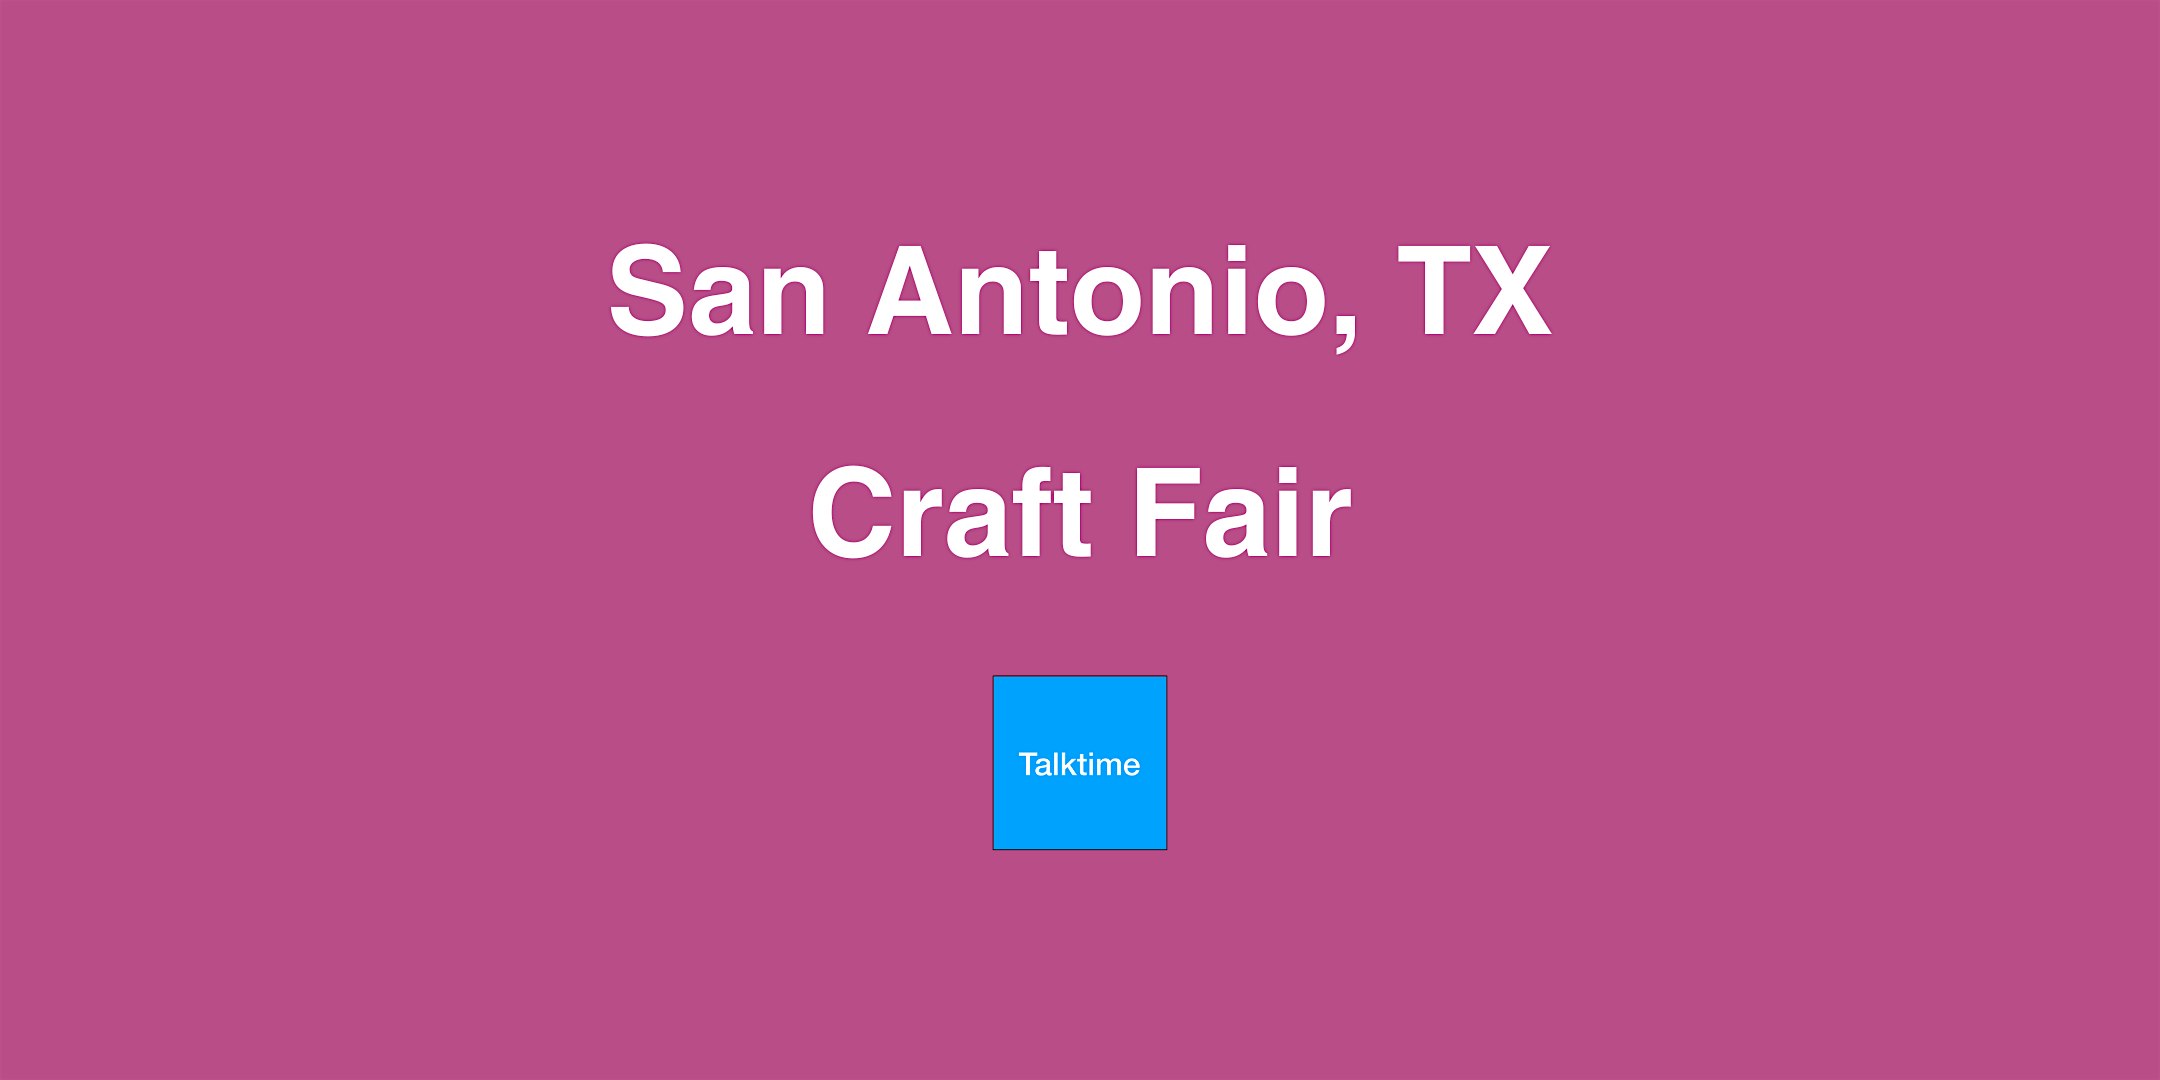 Craft Fair - San Antonio